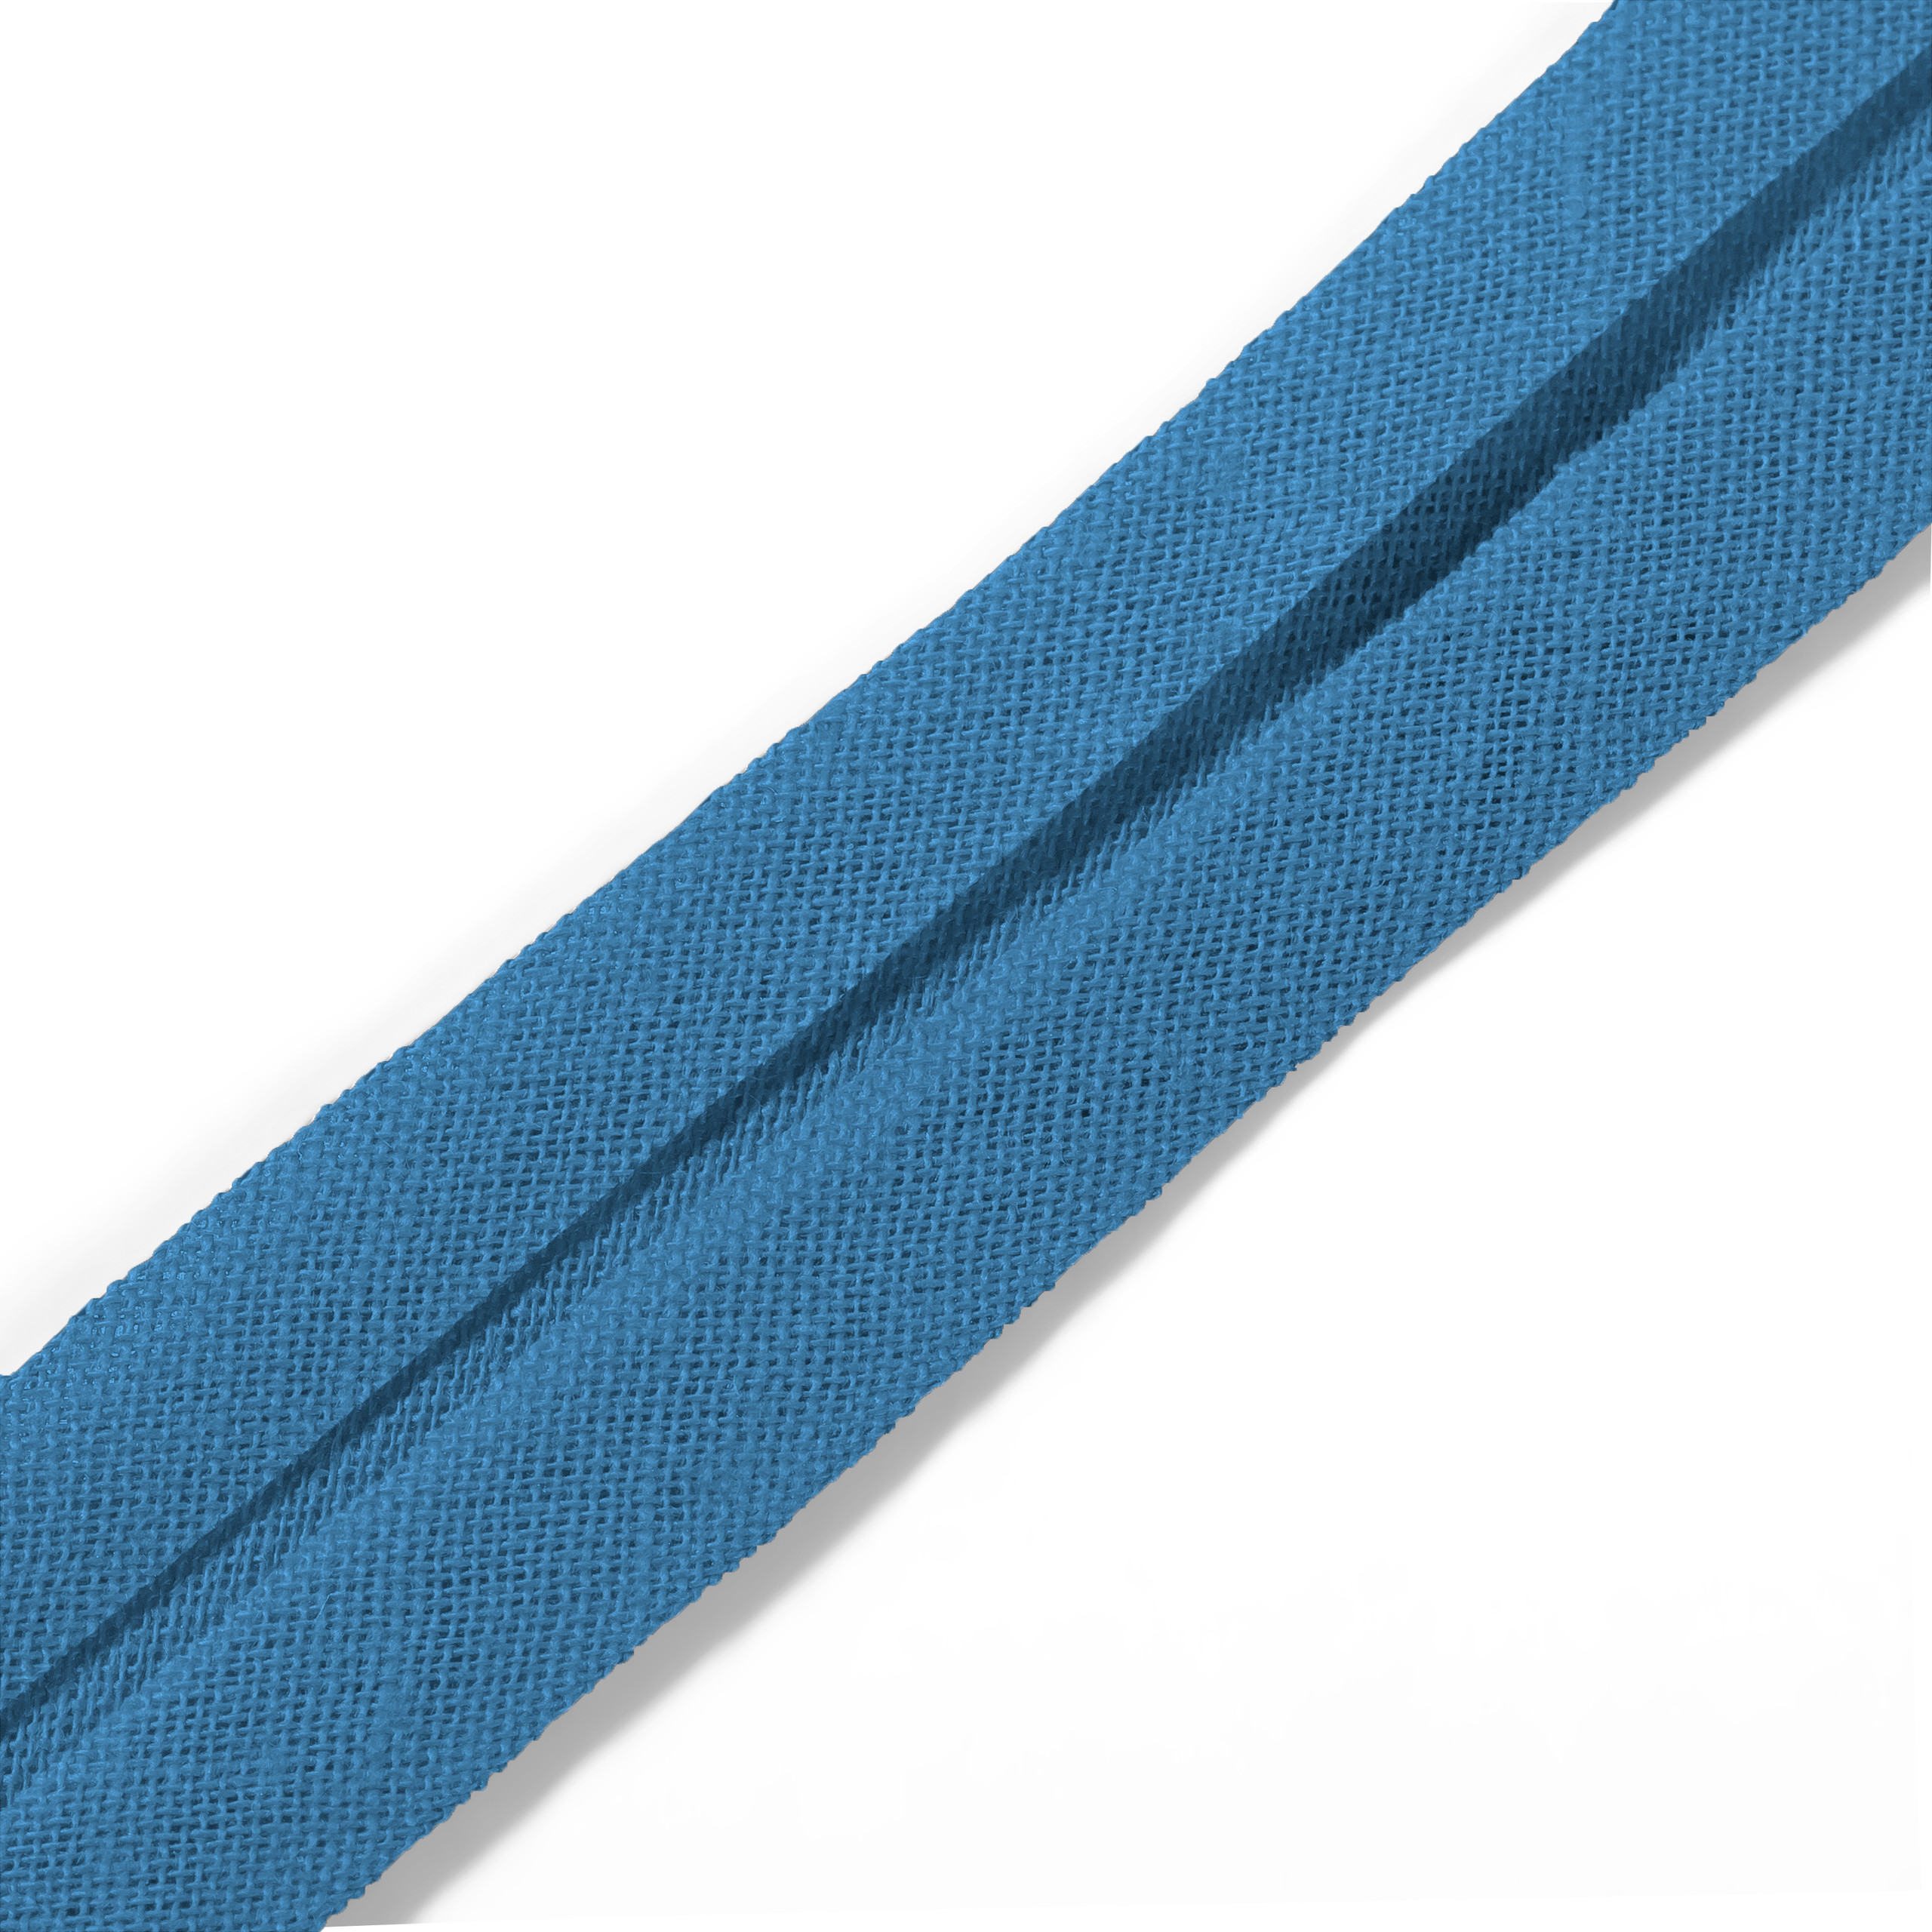 Schrägband 40/20 mm hellblau, Meterware, Baumwolle, Prym, Einfassband